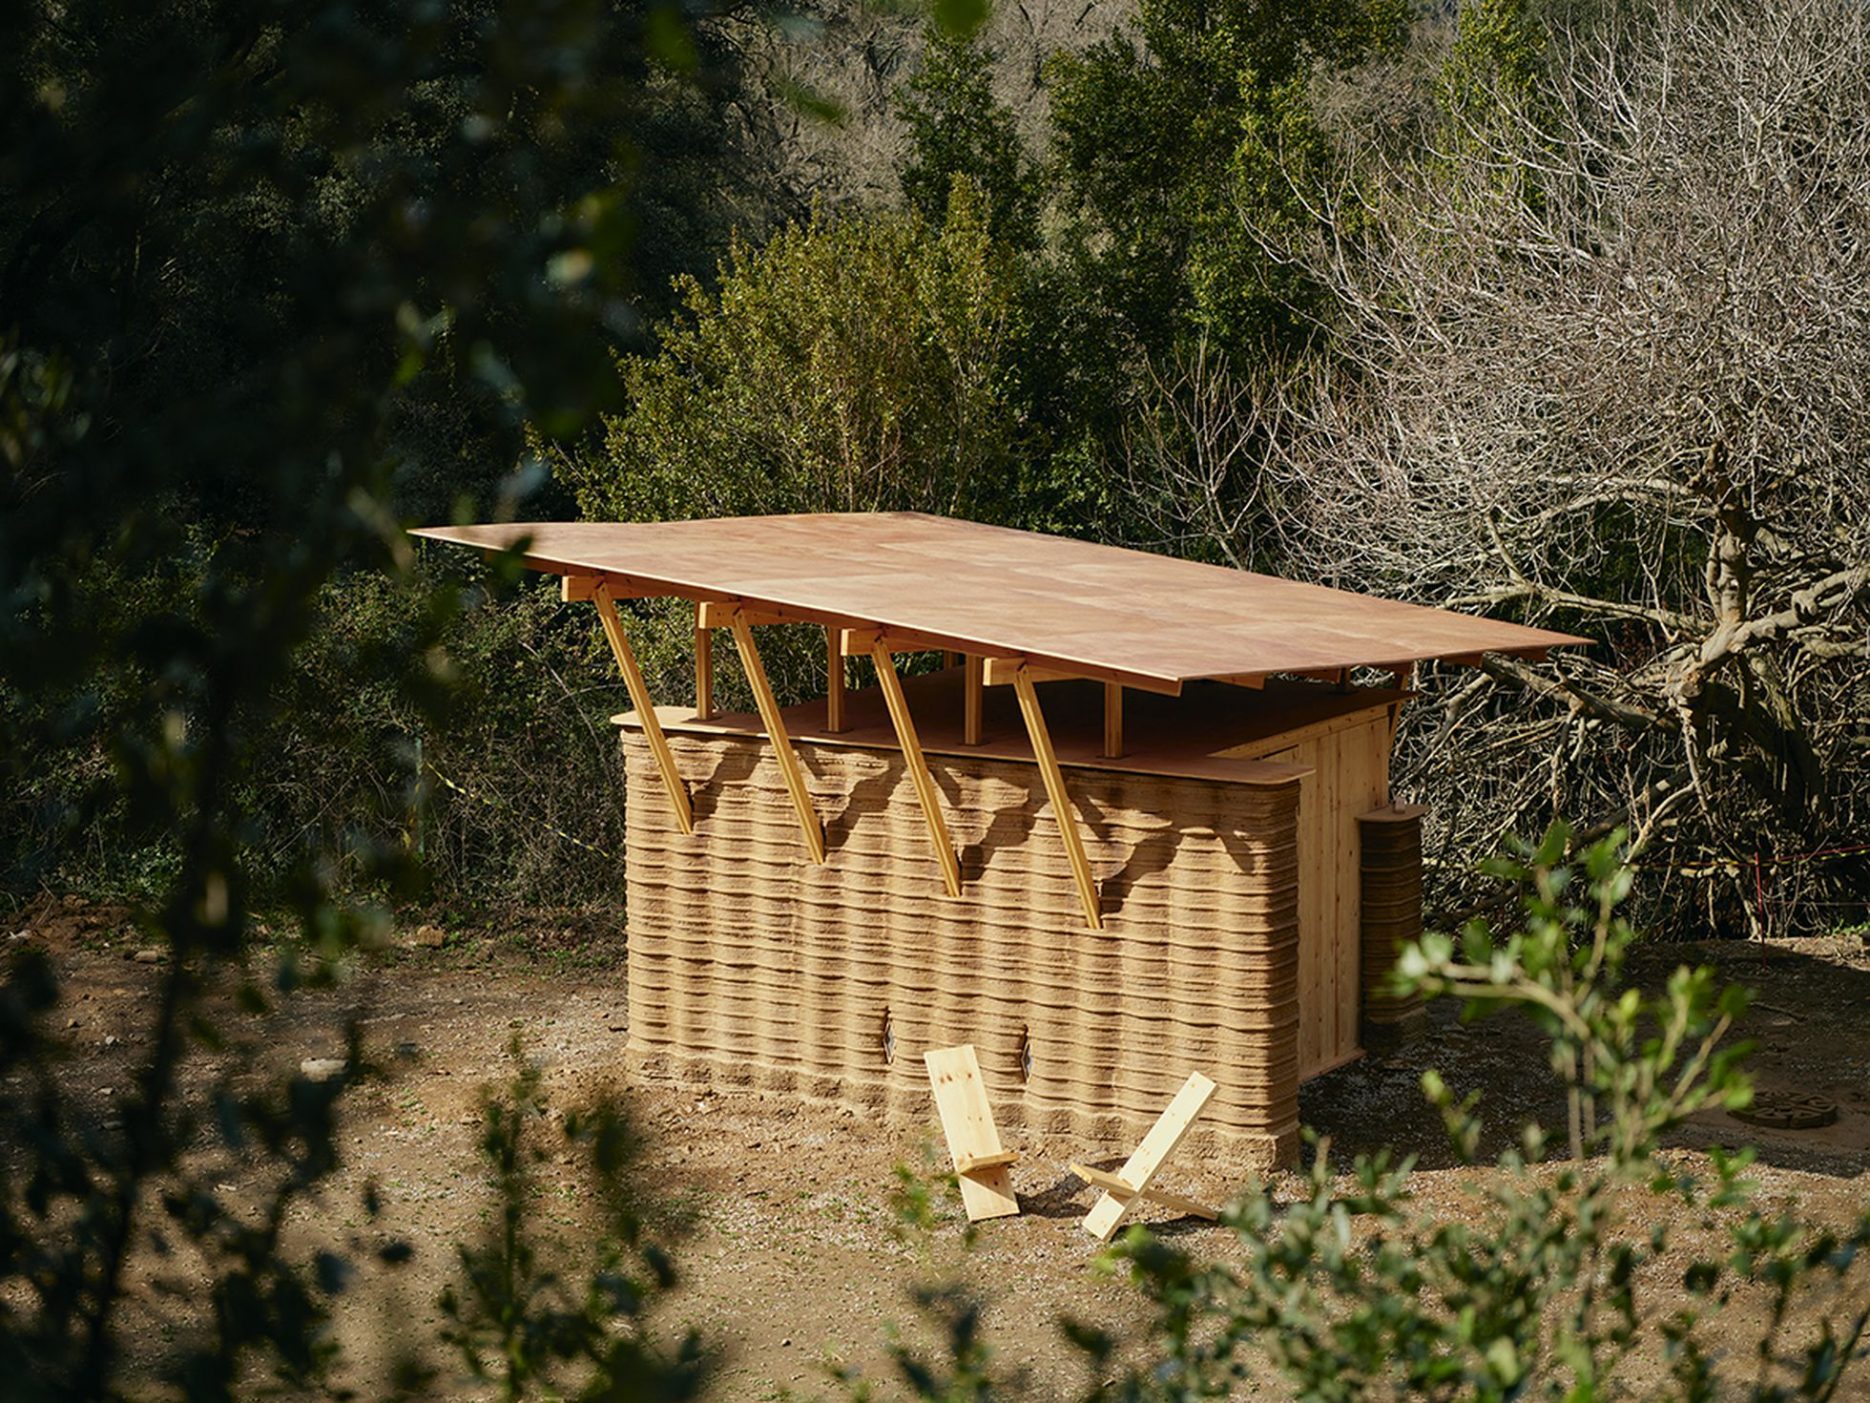 Prototipo de la casa TOVA, la futurista cabaña de barro impreso que sirve de prueba en los terrenos de Valldaura Labs en un rincón del macizo de Collserola (Barcelona). Foto de Gregori Civera